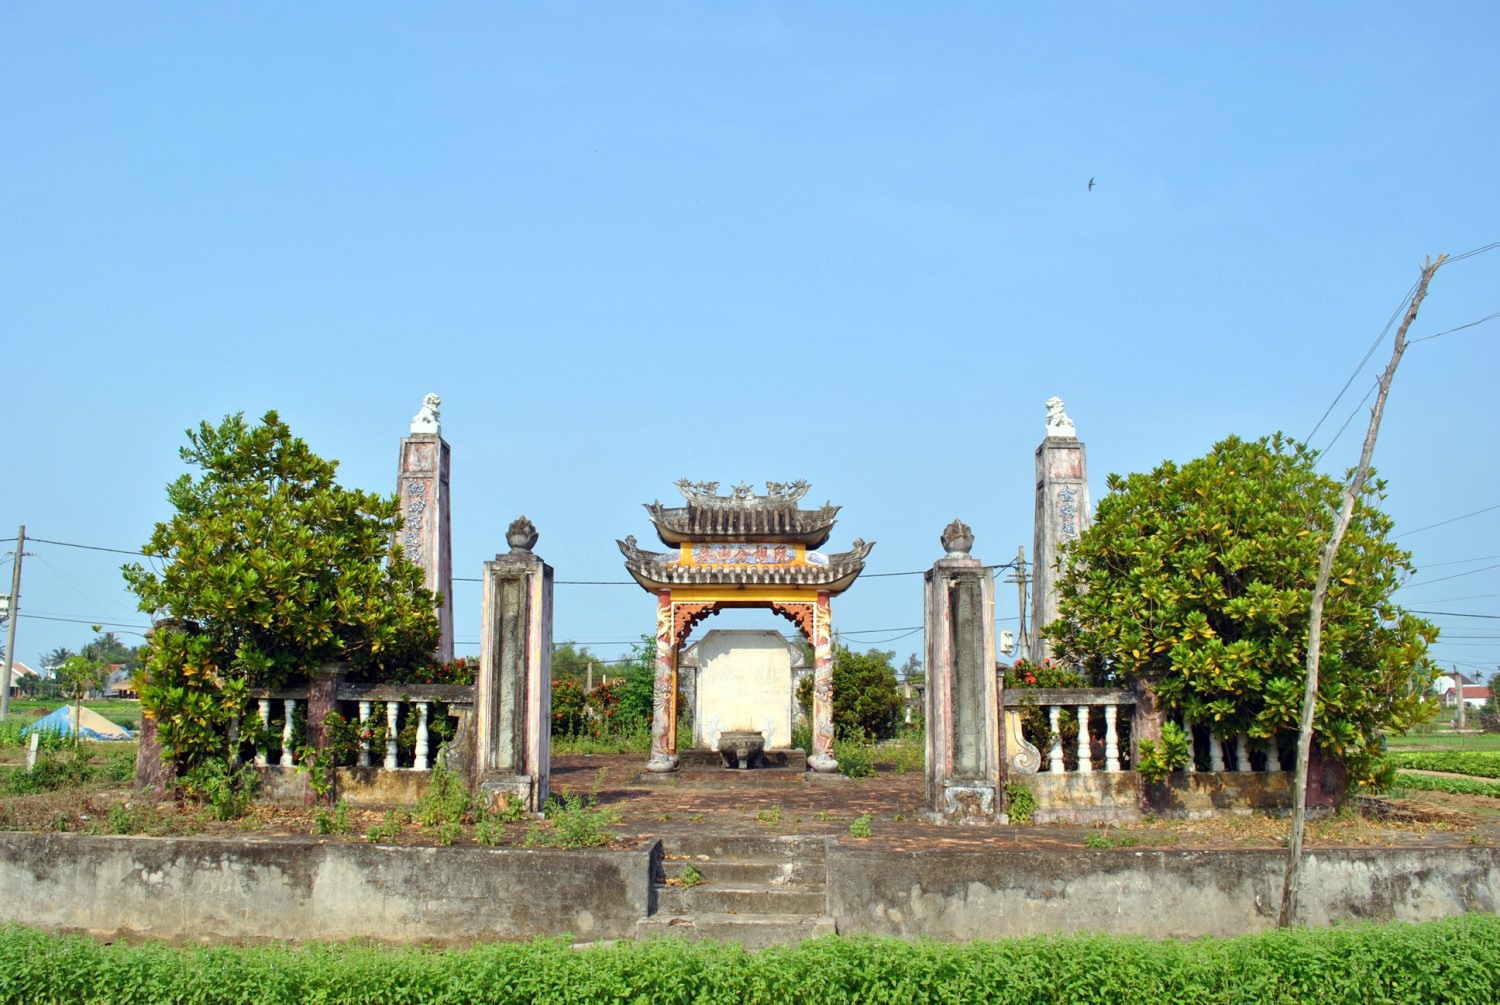 Cử nhân khai khoa đất Hội An, sau khi mất phong Thượng thư, mộ cổ vẫn còn ở Quảng Nam - Ảnh 1.